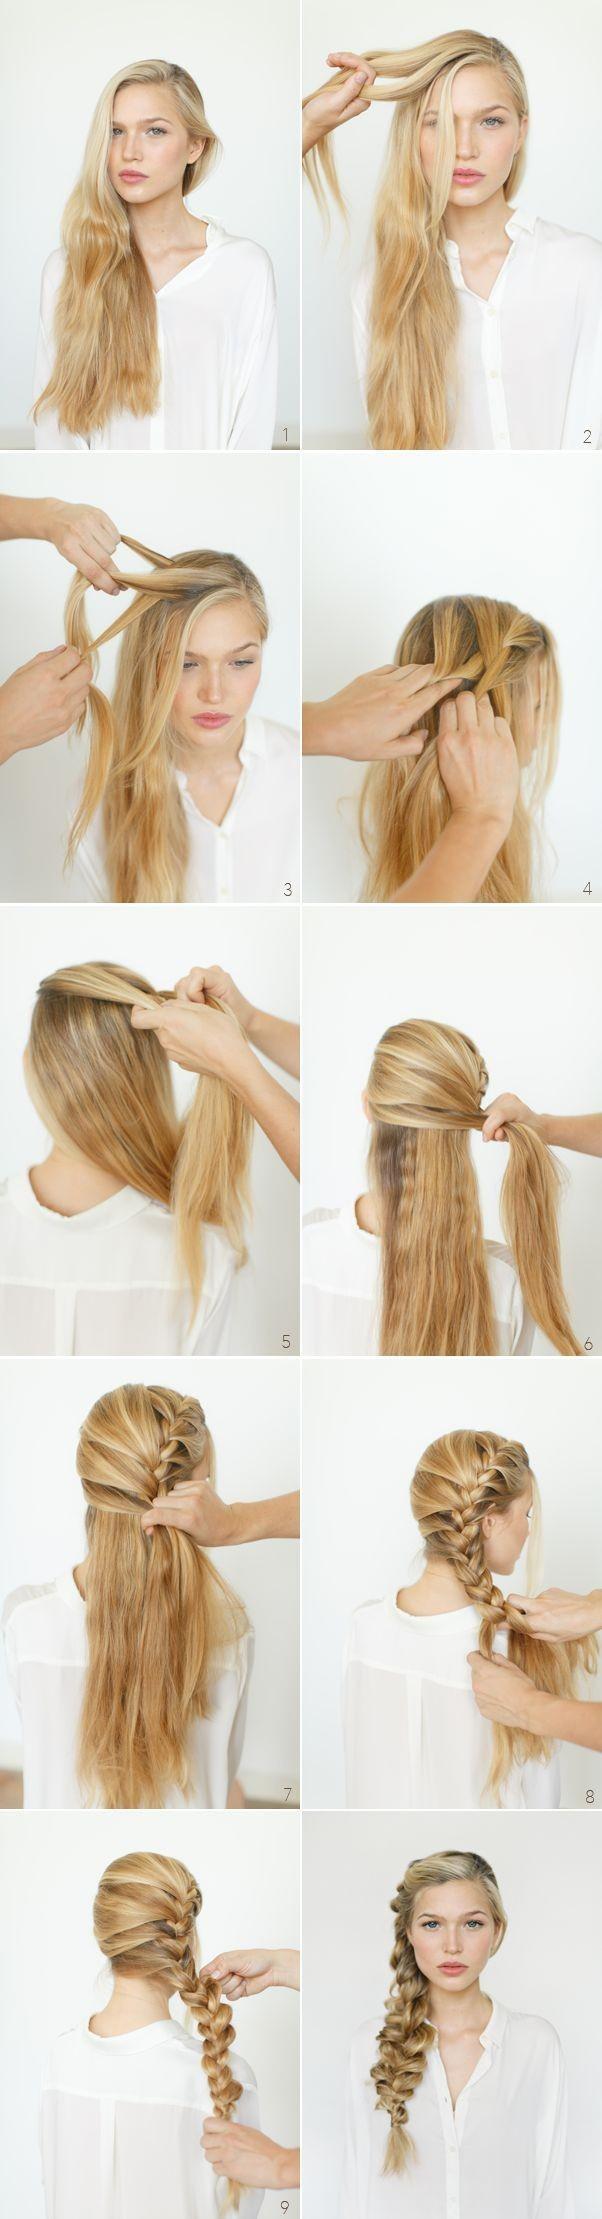 รูปภาพ:http://pophaircuts.com/images/2014/03/Romantic-Hairstyle-Ideas-and-Tutorials-Side-Braids.jpg